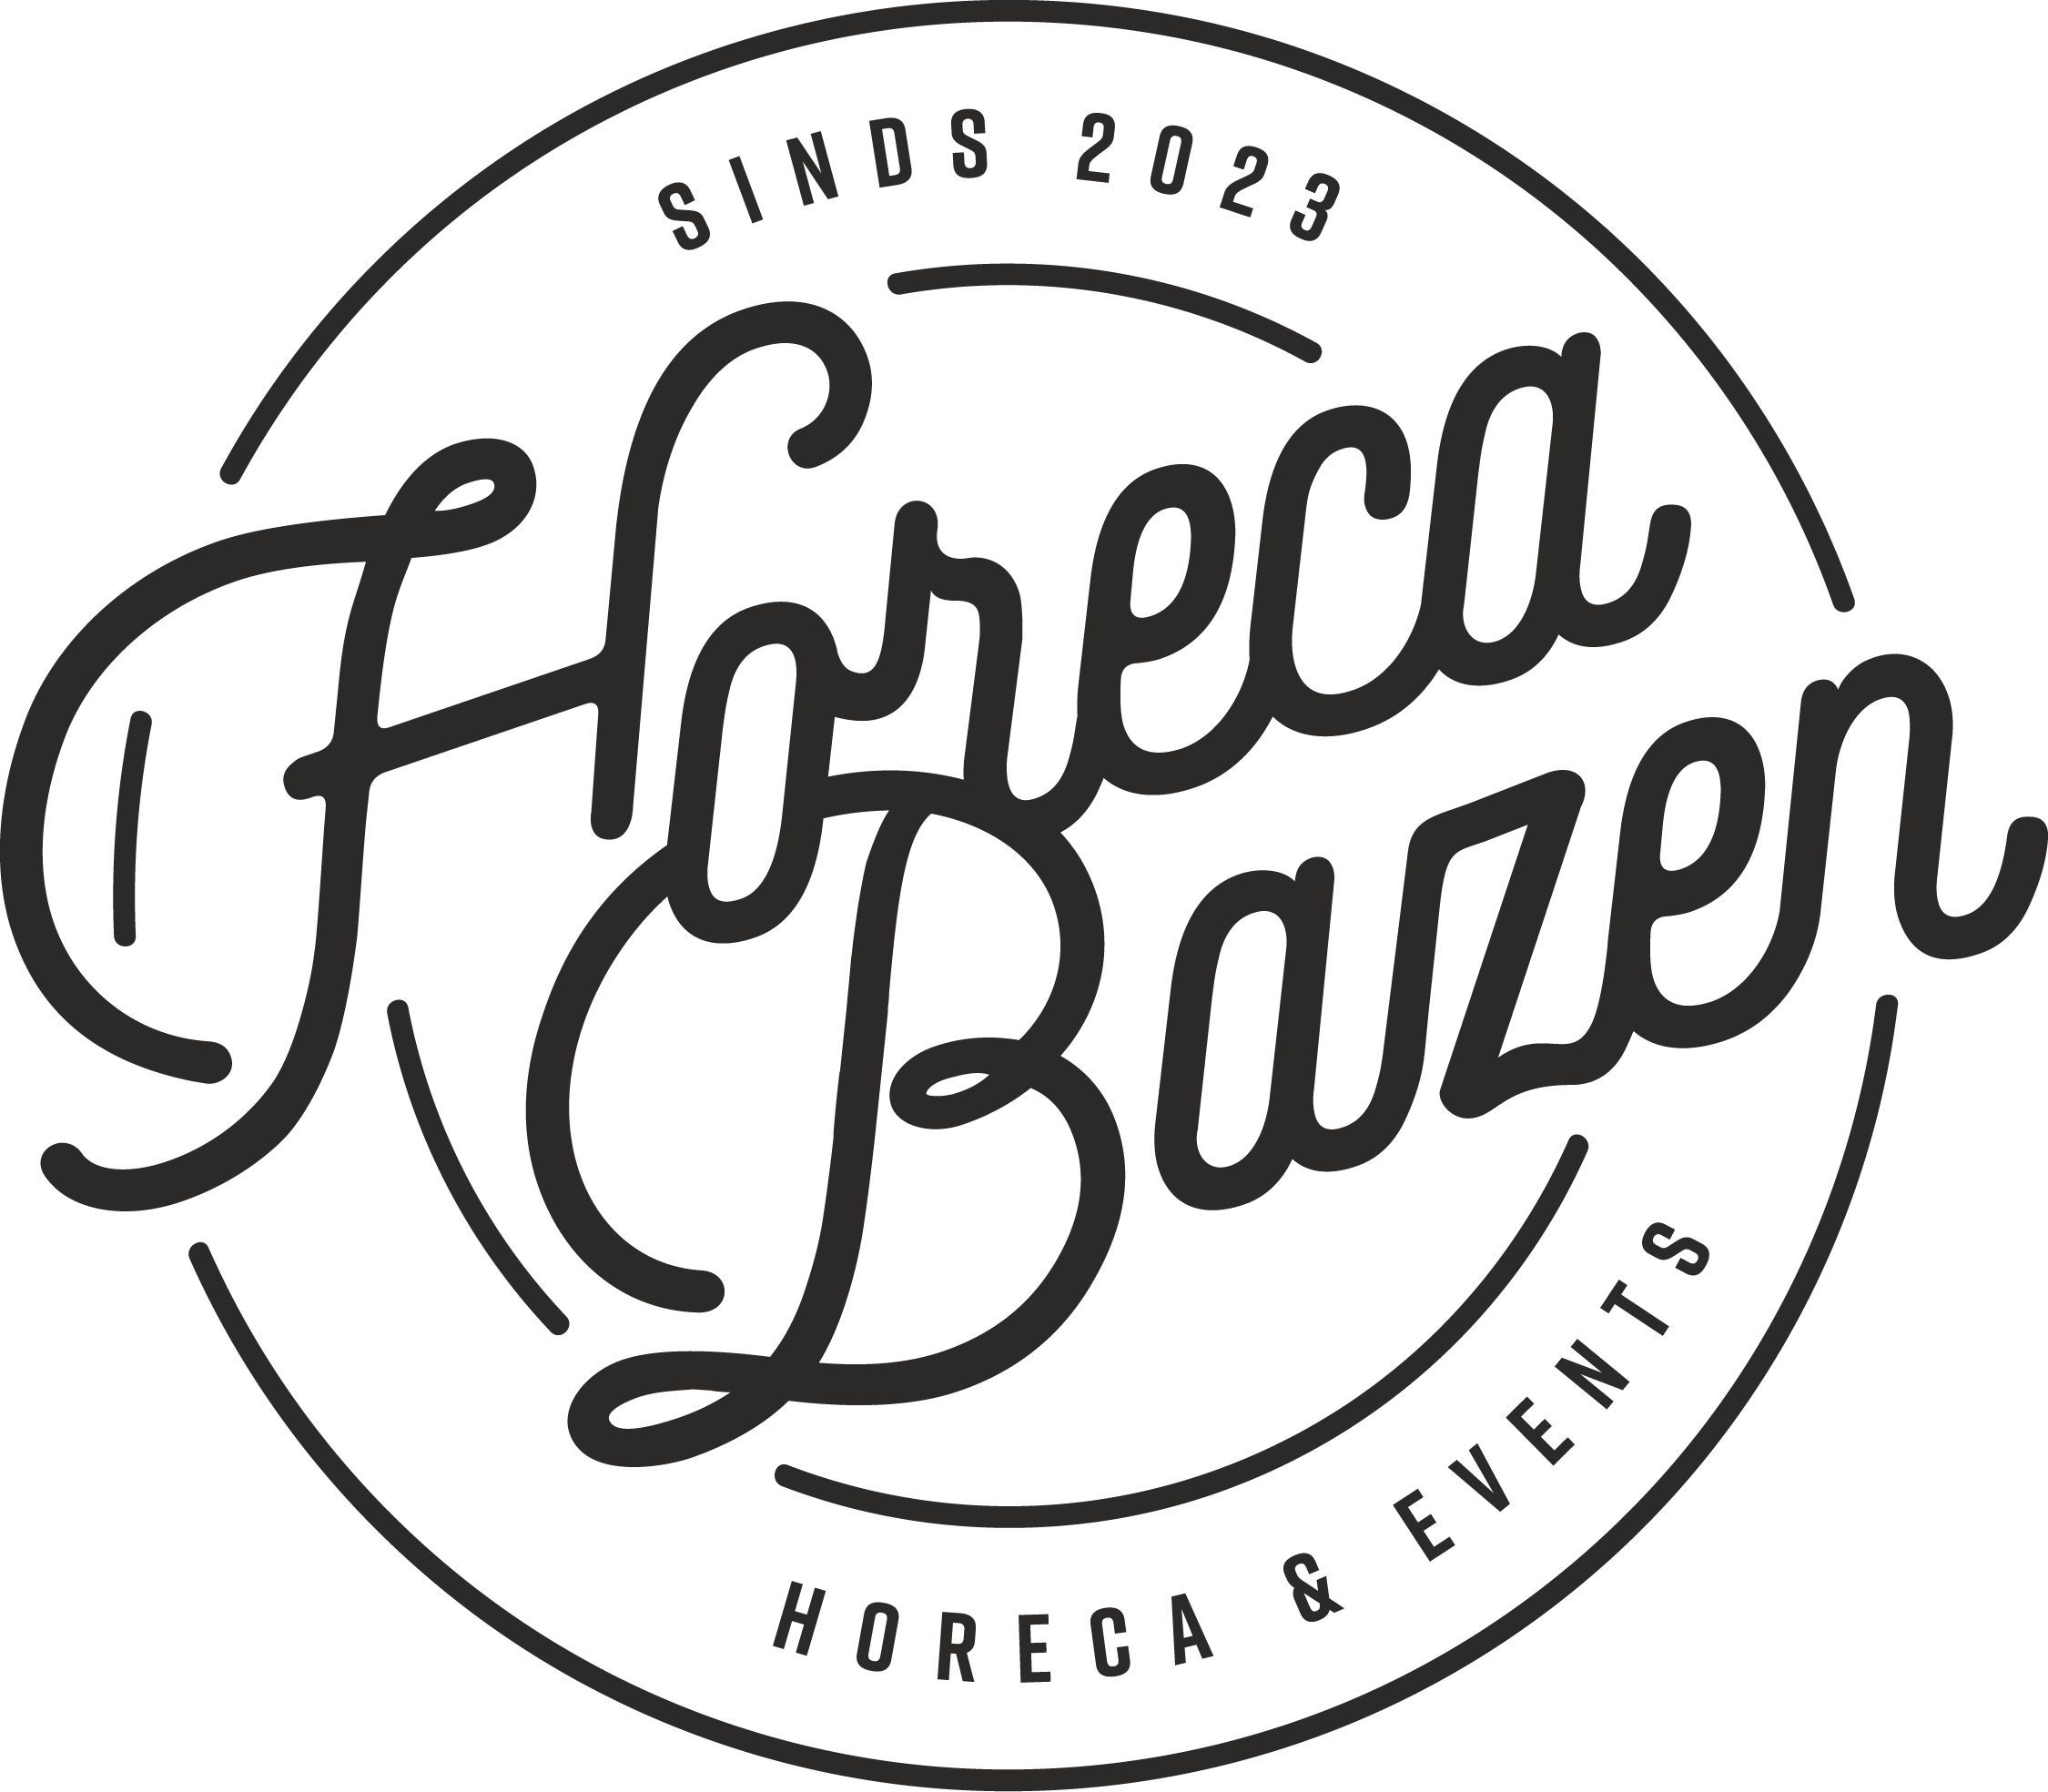 Horeca Bazen